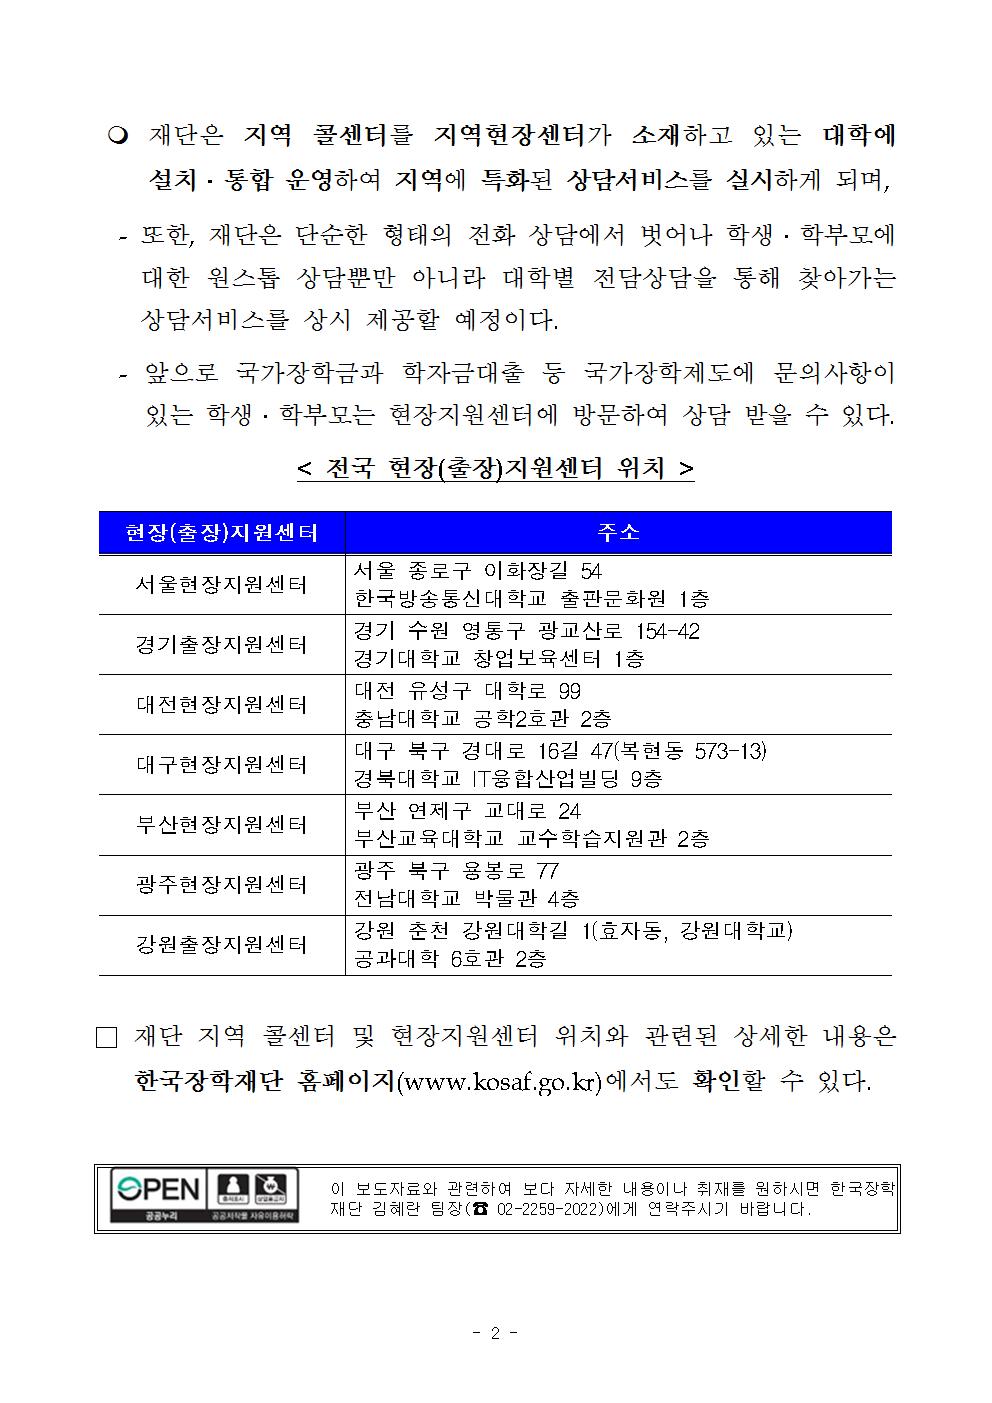 05-11(목)[보도자료] 한국장학재단, 현장지원센터와 연계하여 전국 7개 지역으로 콜센터 확대 개편002.jpg